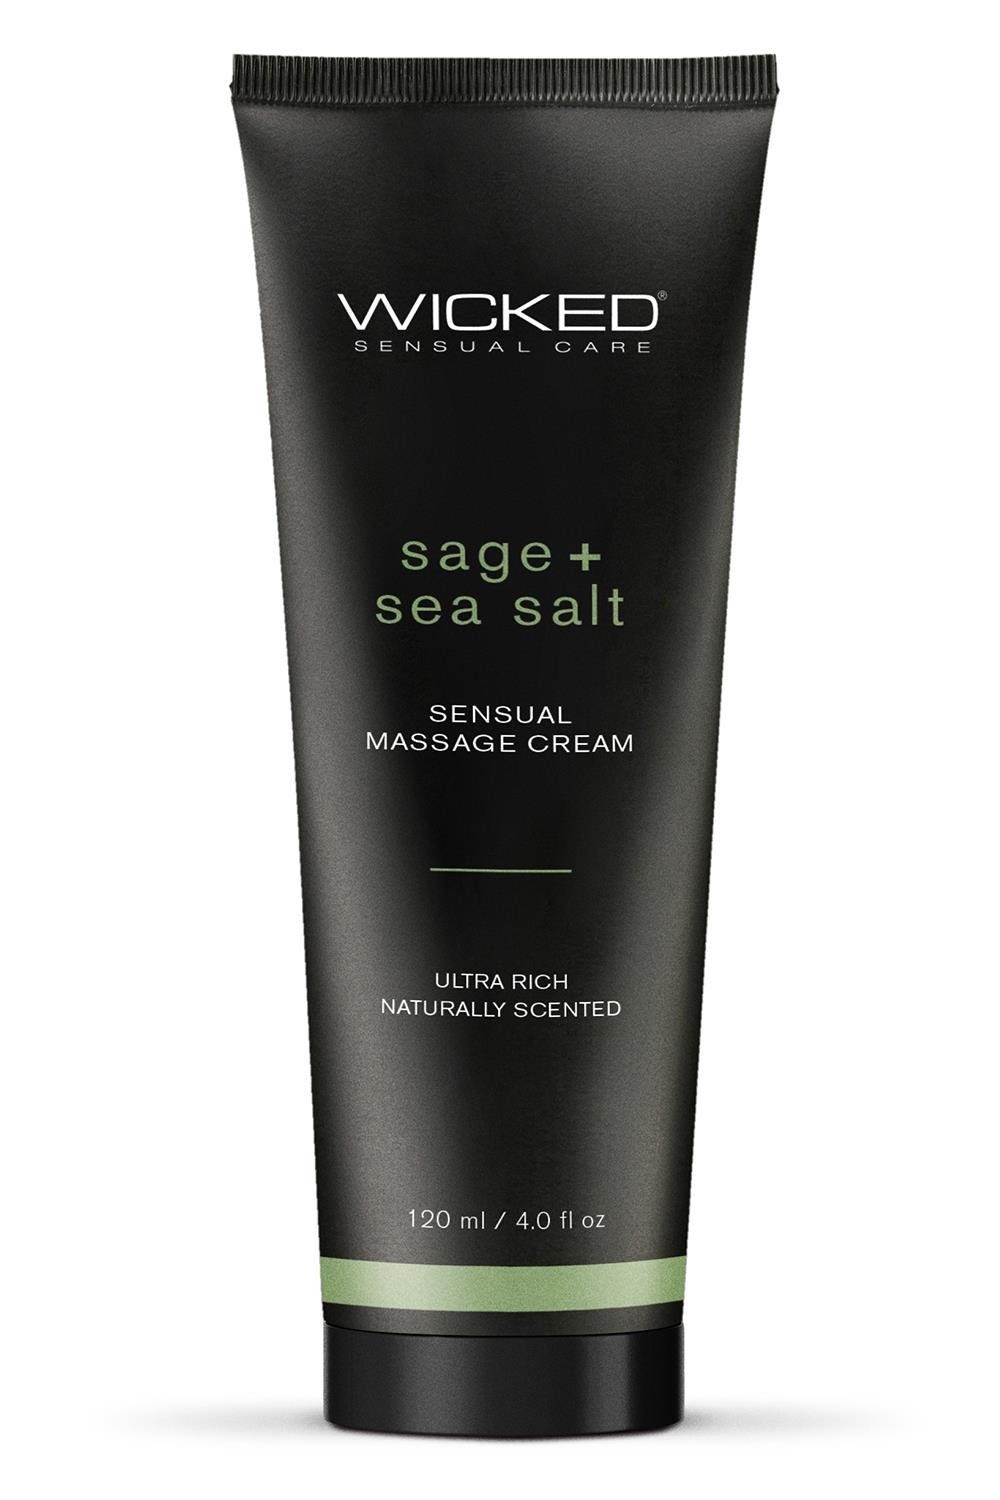 Sensual Gleit- und Seasal Massage Wicked Scented Cream Sage and 120ml Wicked Massagegel